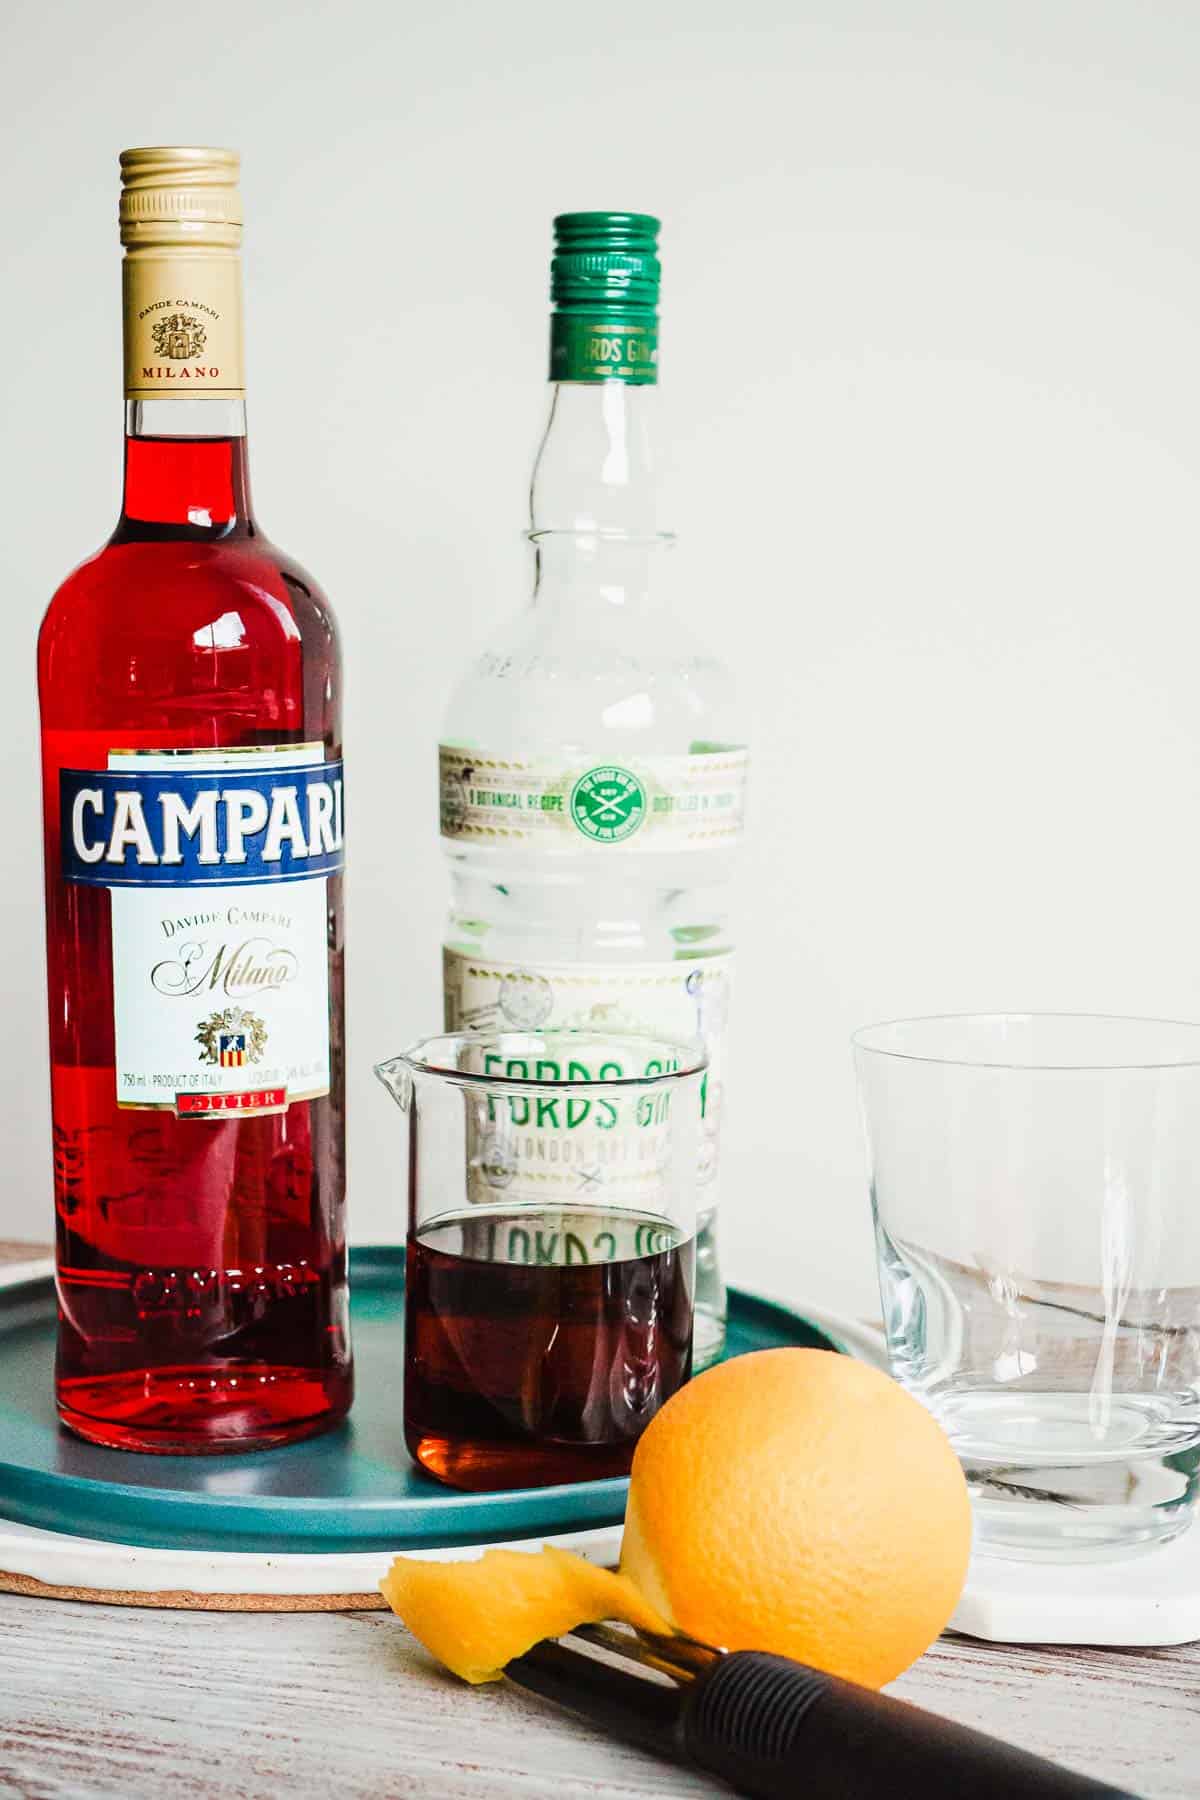 Un cocktail negroni dans un mixeur en verre sans glace et une bouteille de campari, du gin et une orange pelée à part.